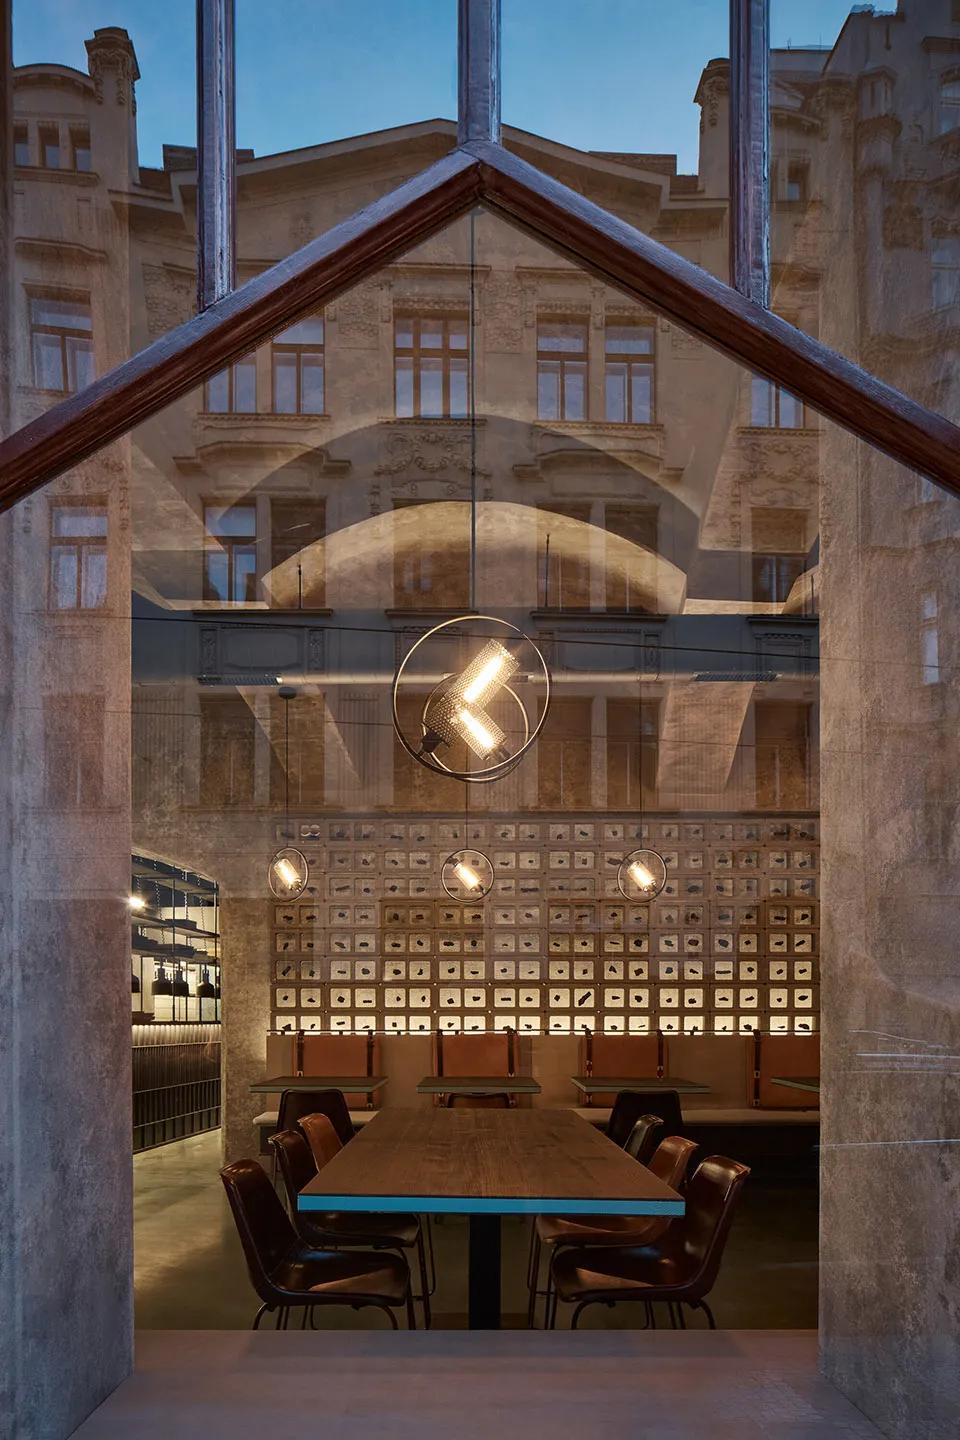 Gran Fierro主題餐廳設計 藝術與美學完美結合